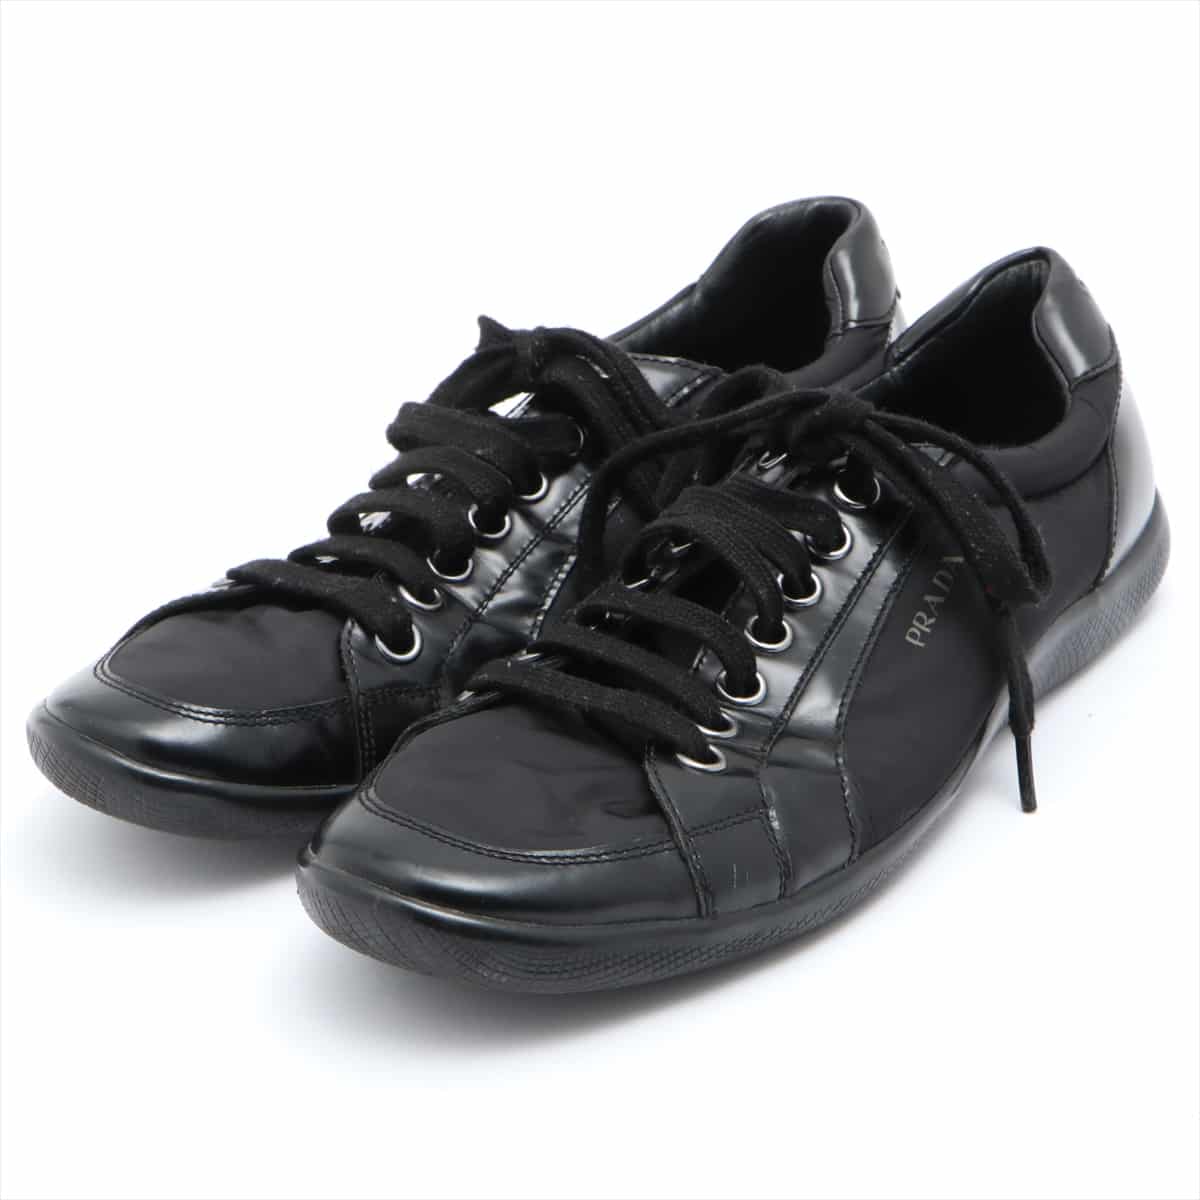 Prada Sport Nylon & Leather Sneakers 8 Men's Black